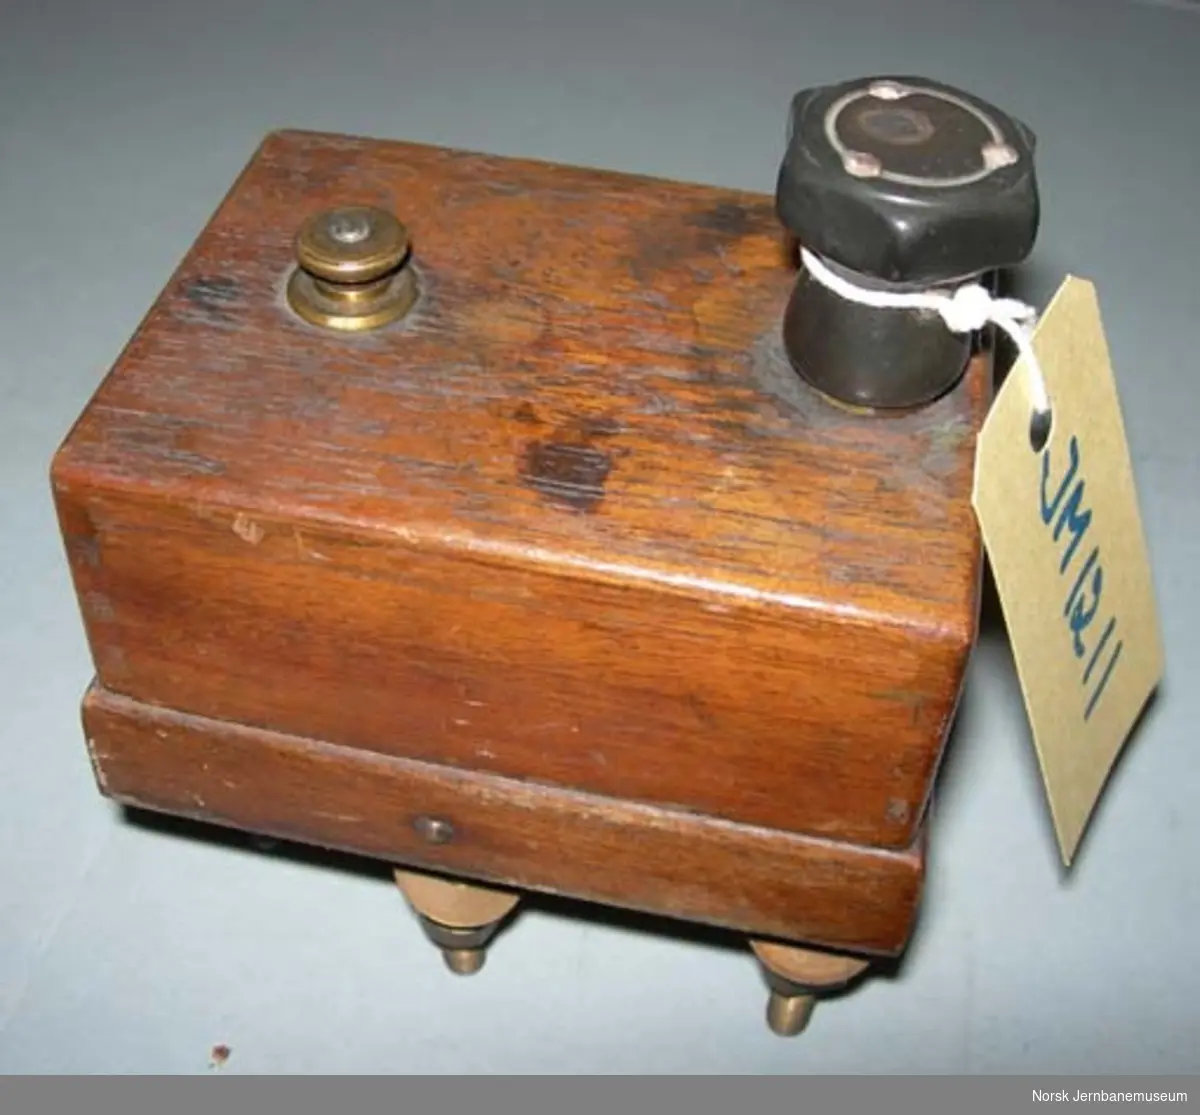 Kommutatornøkkel : yngre type - kopler batteri mellom Morse- og signaltelegraf